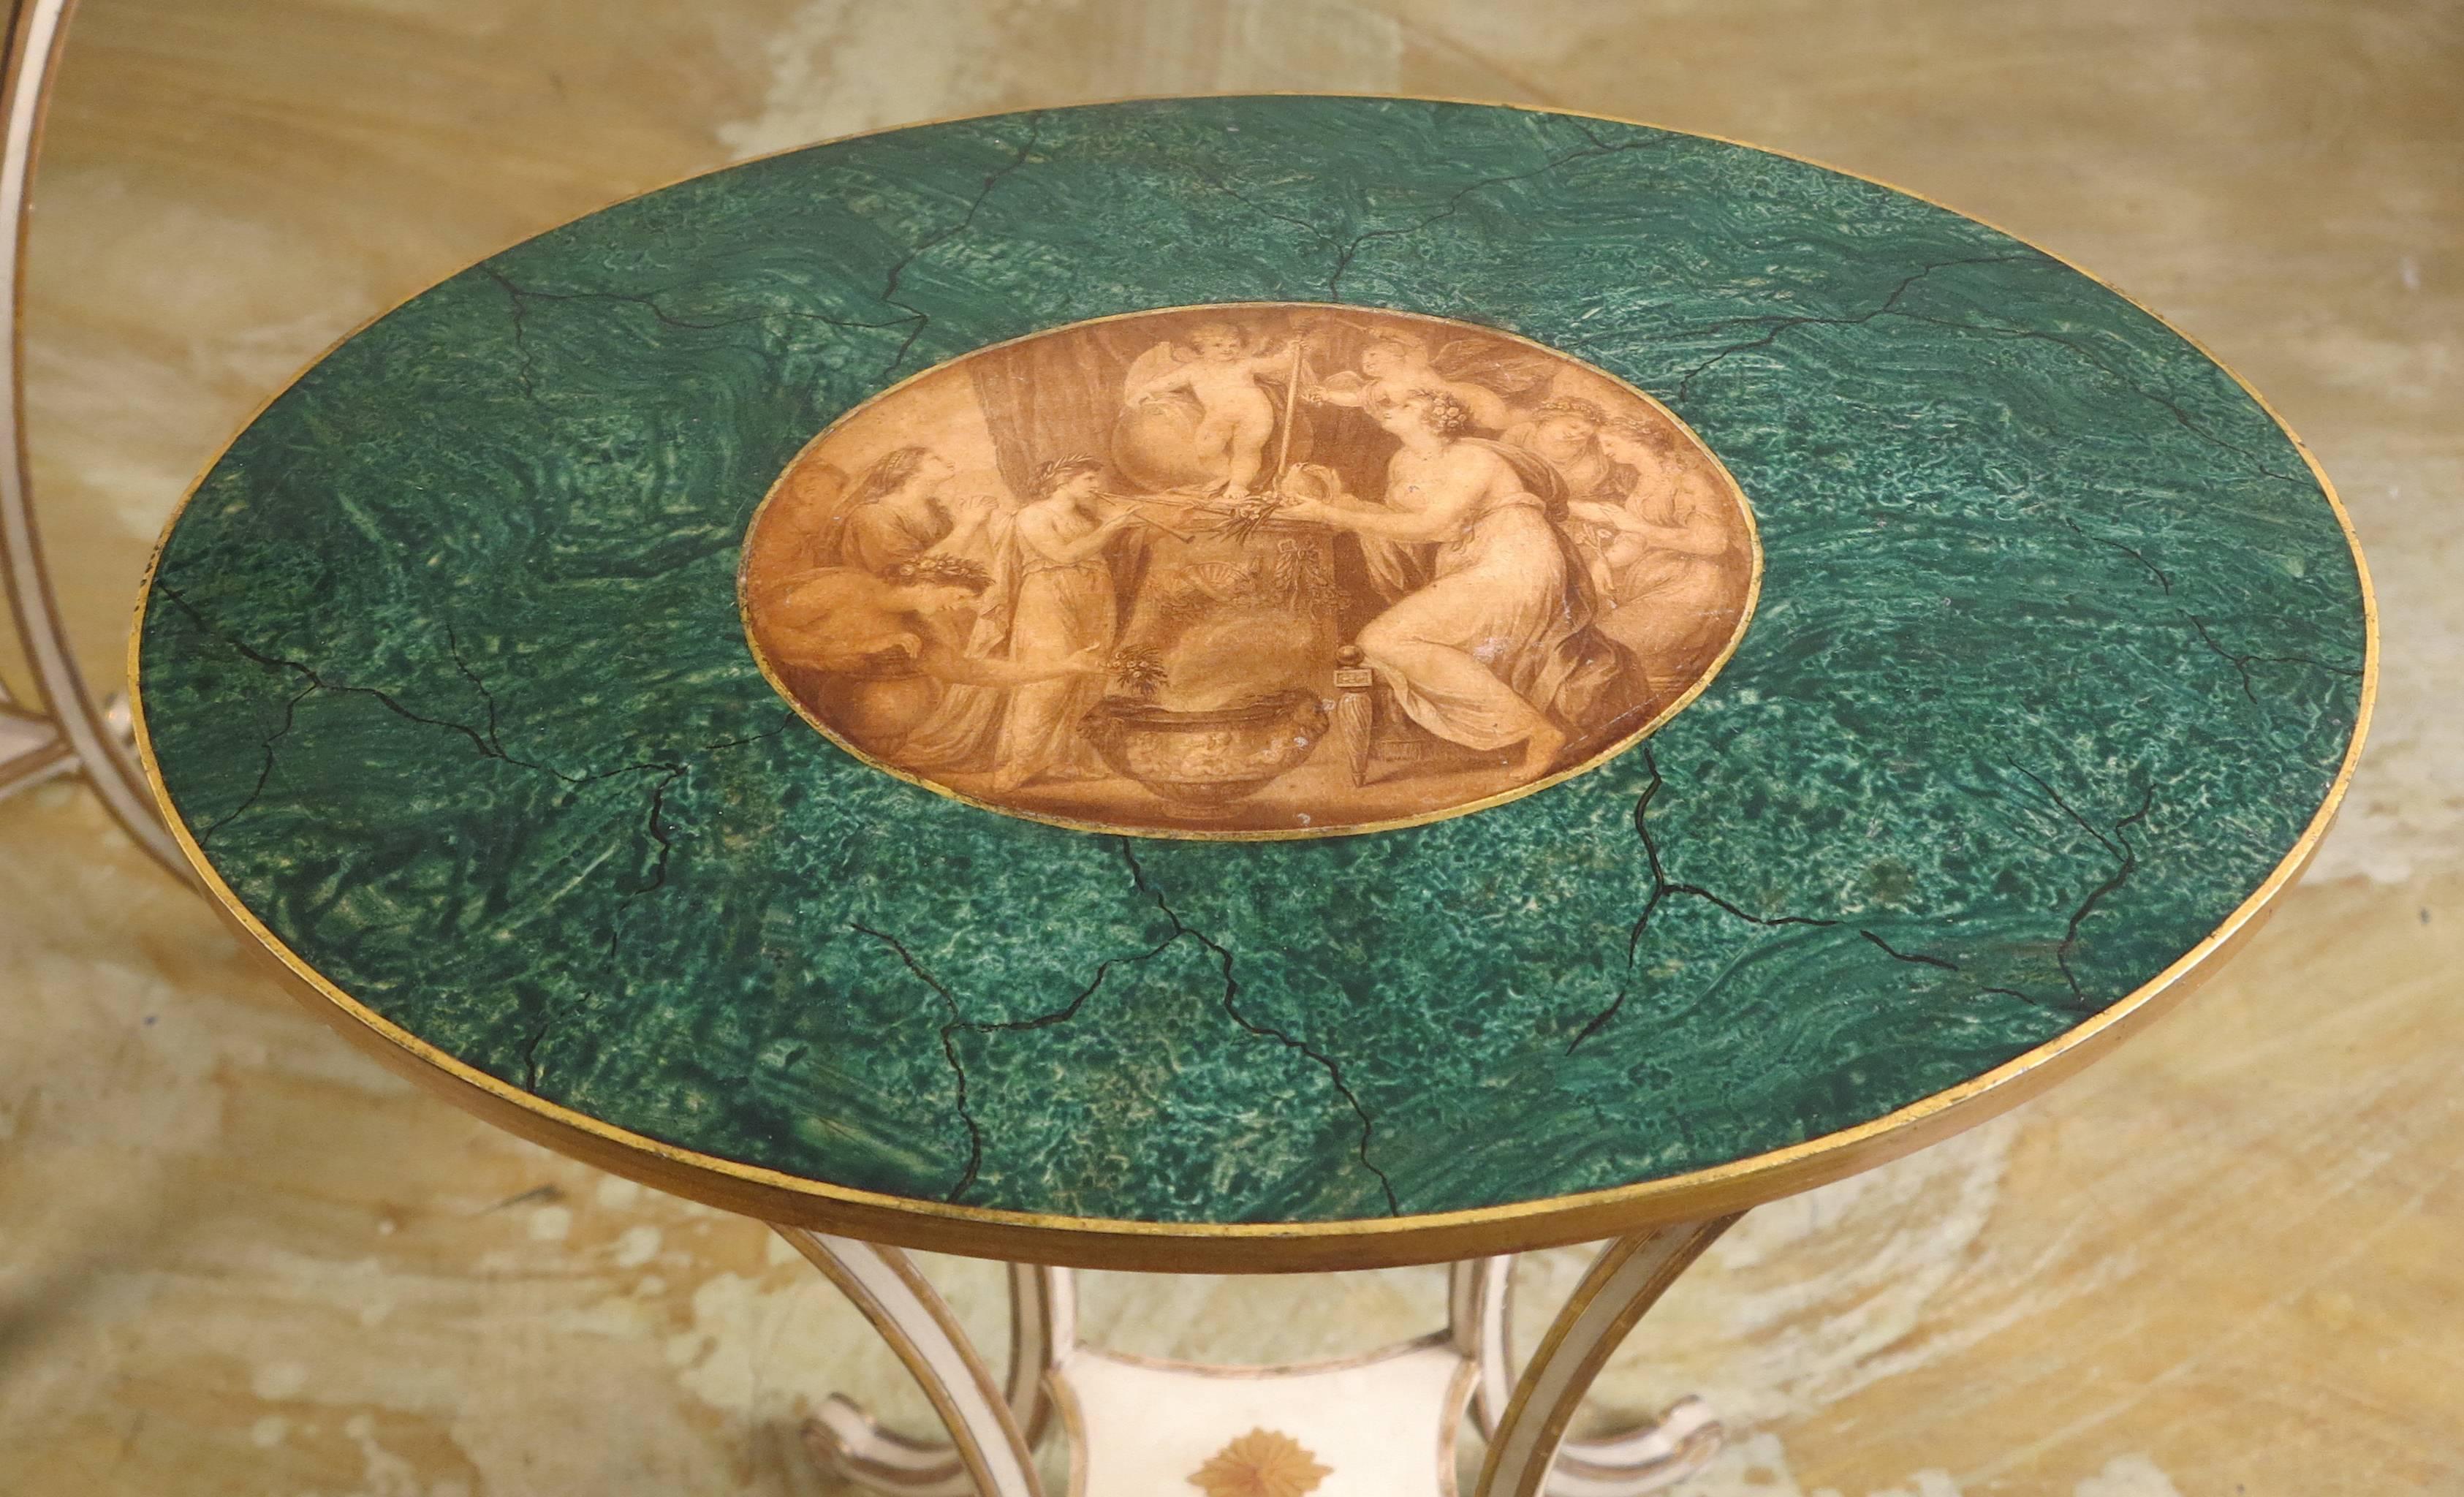 Ein schönes Paar Beistelltische aus der Zeit von George III
Im Stil von Angelica Kauffman
19. Jahrhundert

Jede ovale Platte ist mit einer zentralen, gemalten mythologischen Szene verziert und mit einer marmorierten Oberfläche versehen.
Auf